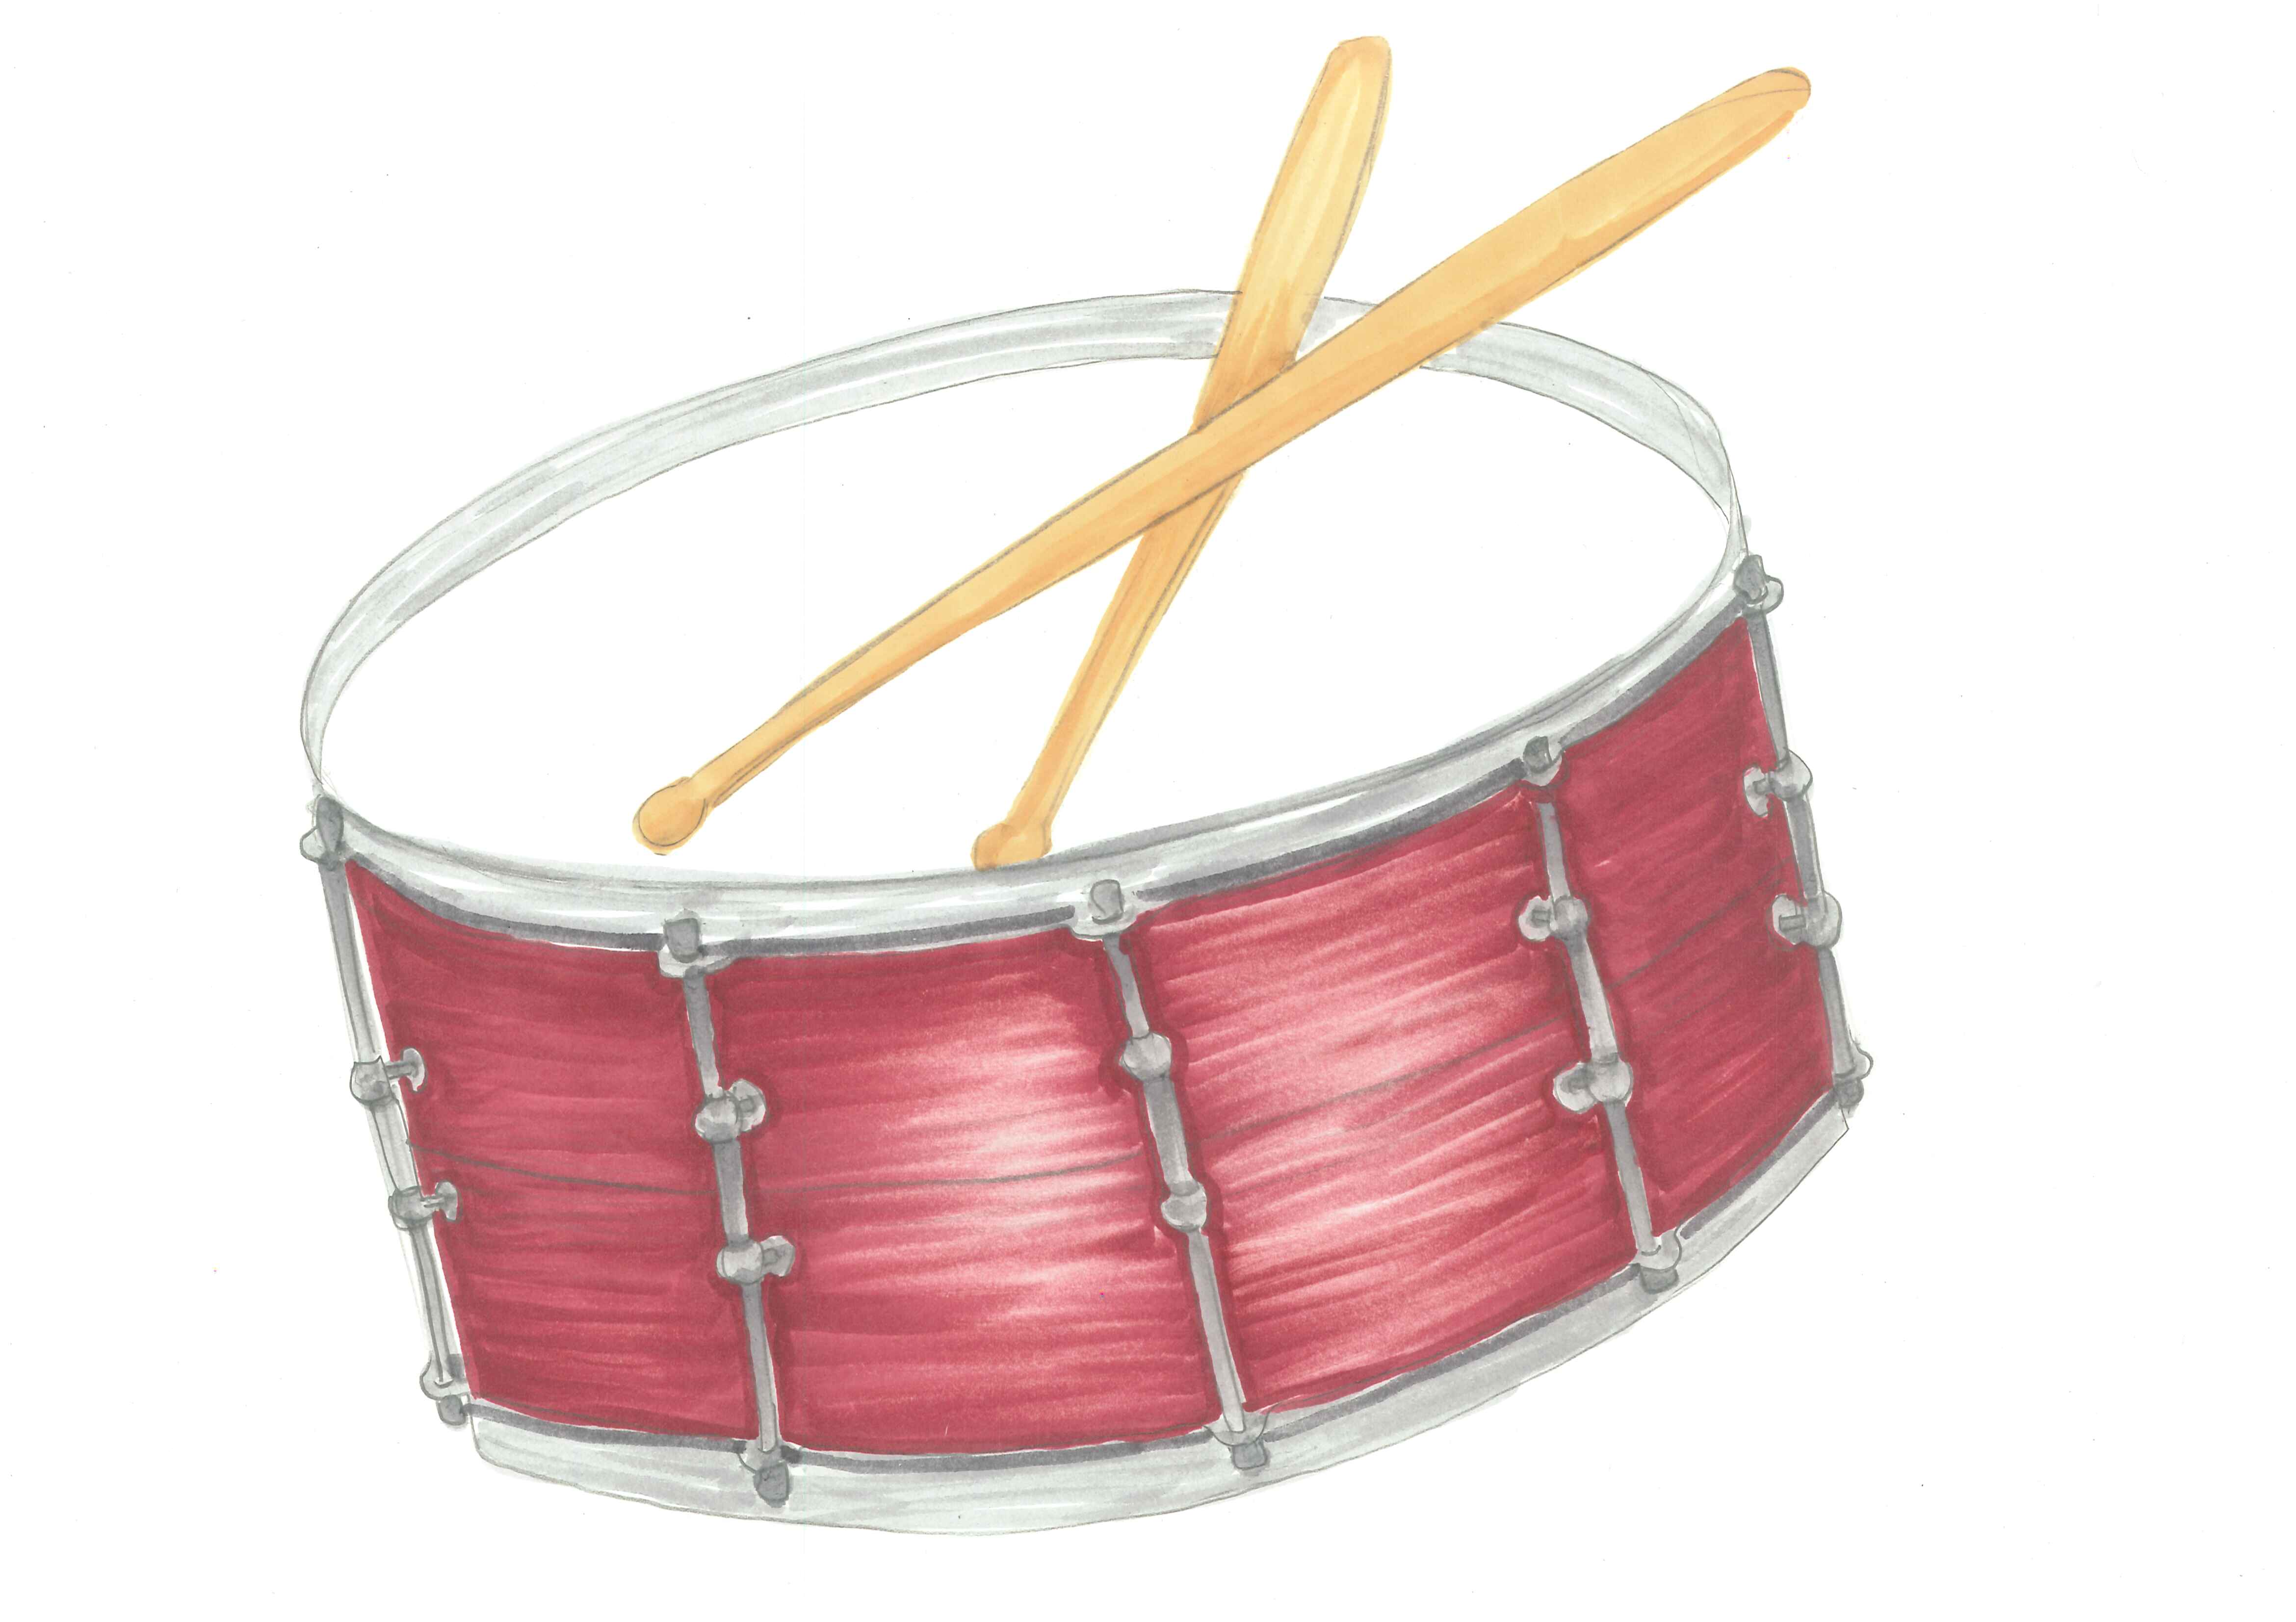 Snare Drum Clipart Etc